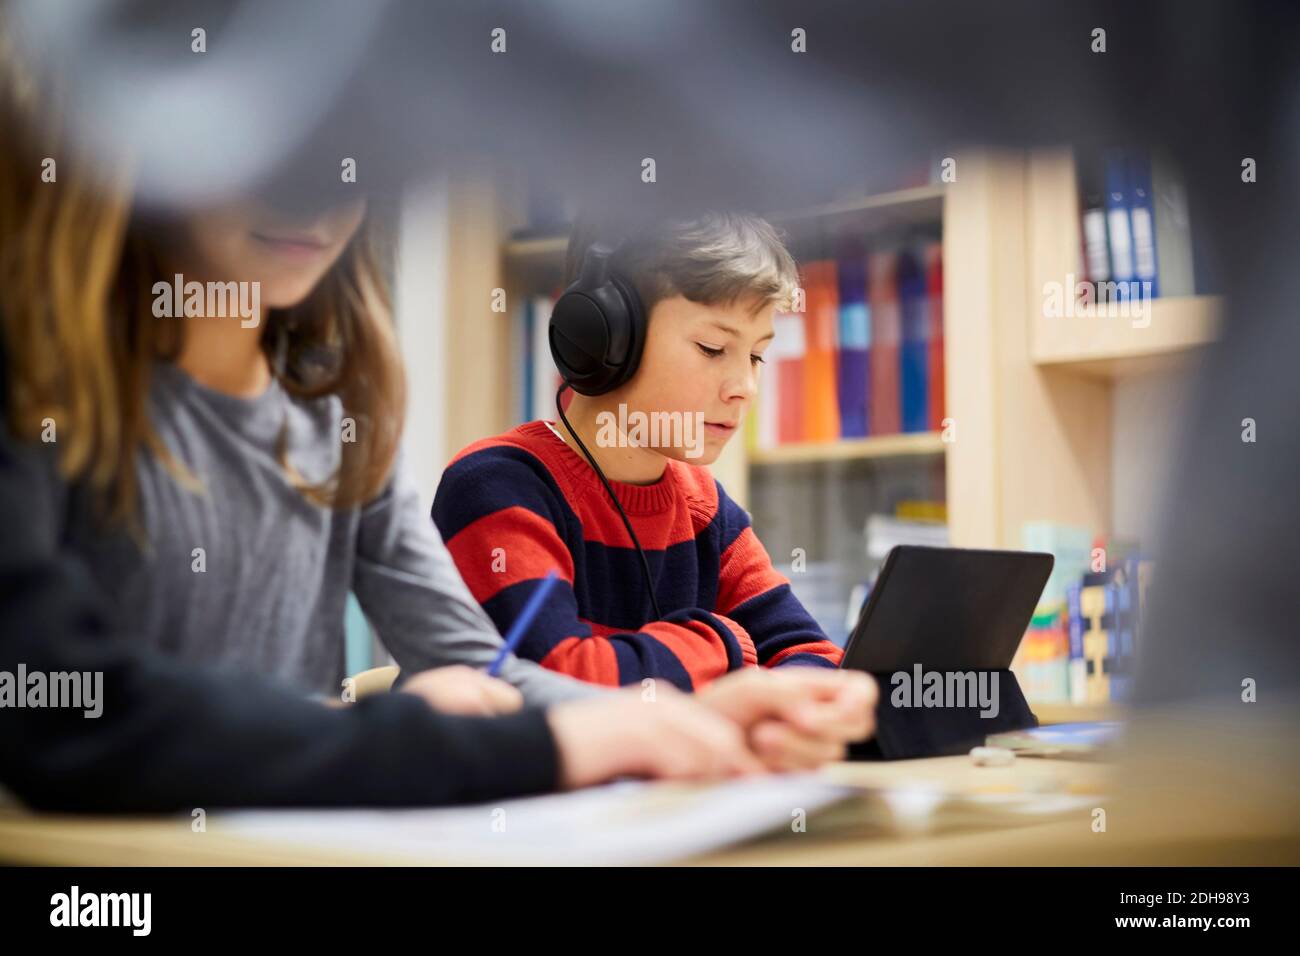 Junge, der Kopfhörer trägt, während er im Klassenzimmer auf ein digitales Tablet schaut Stockfoto